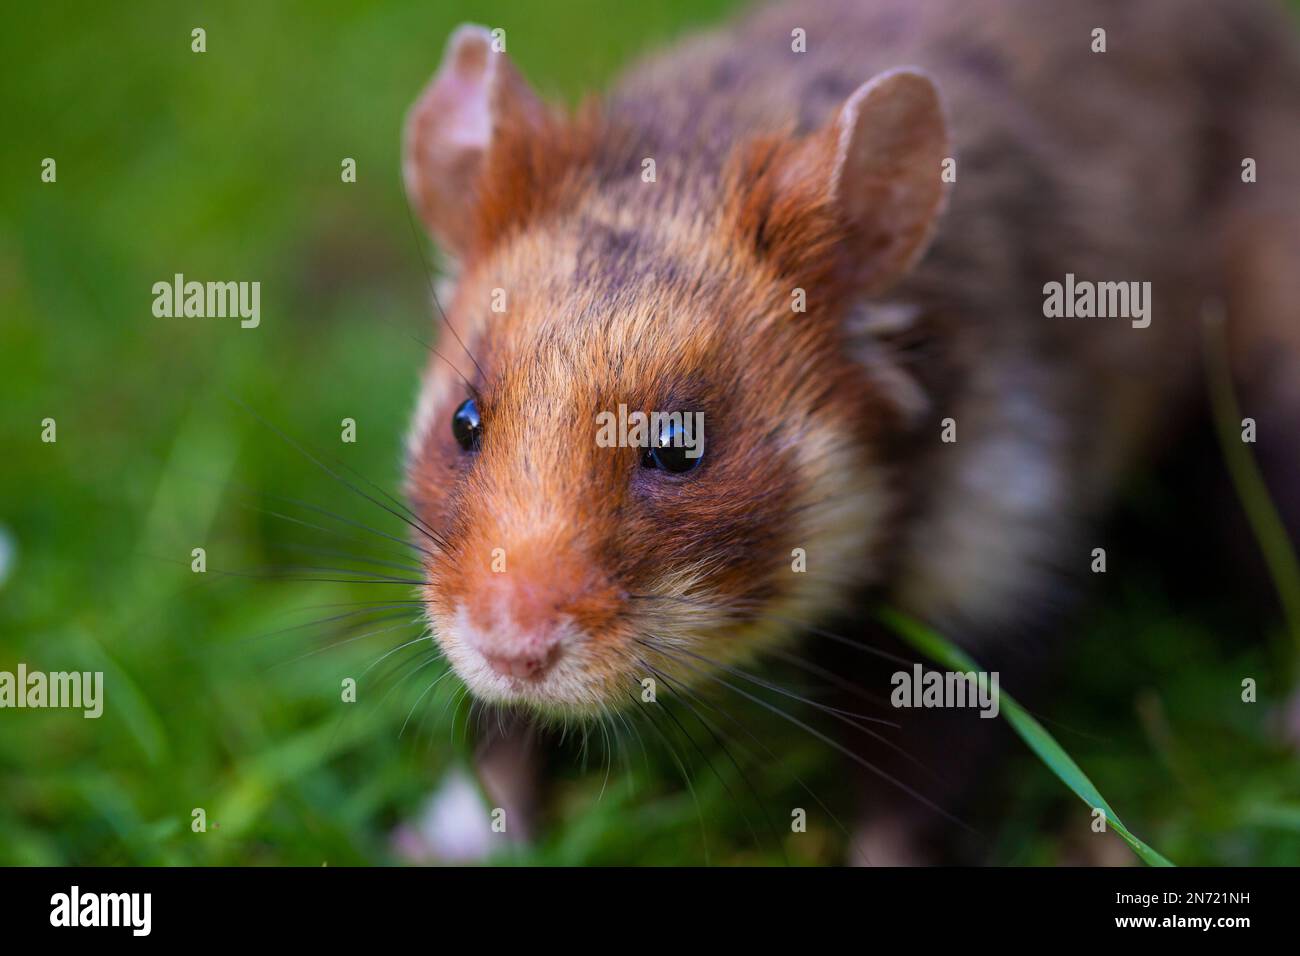 Hamster de campagne, Cricetus cricetus, hamster européen, prairie Banque D'Images